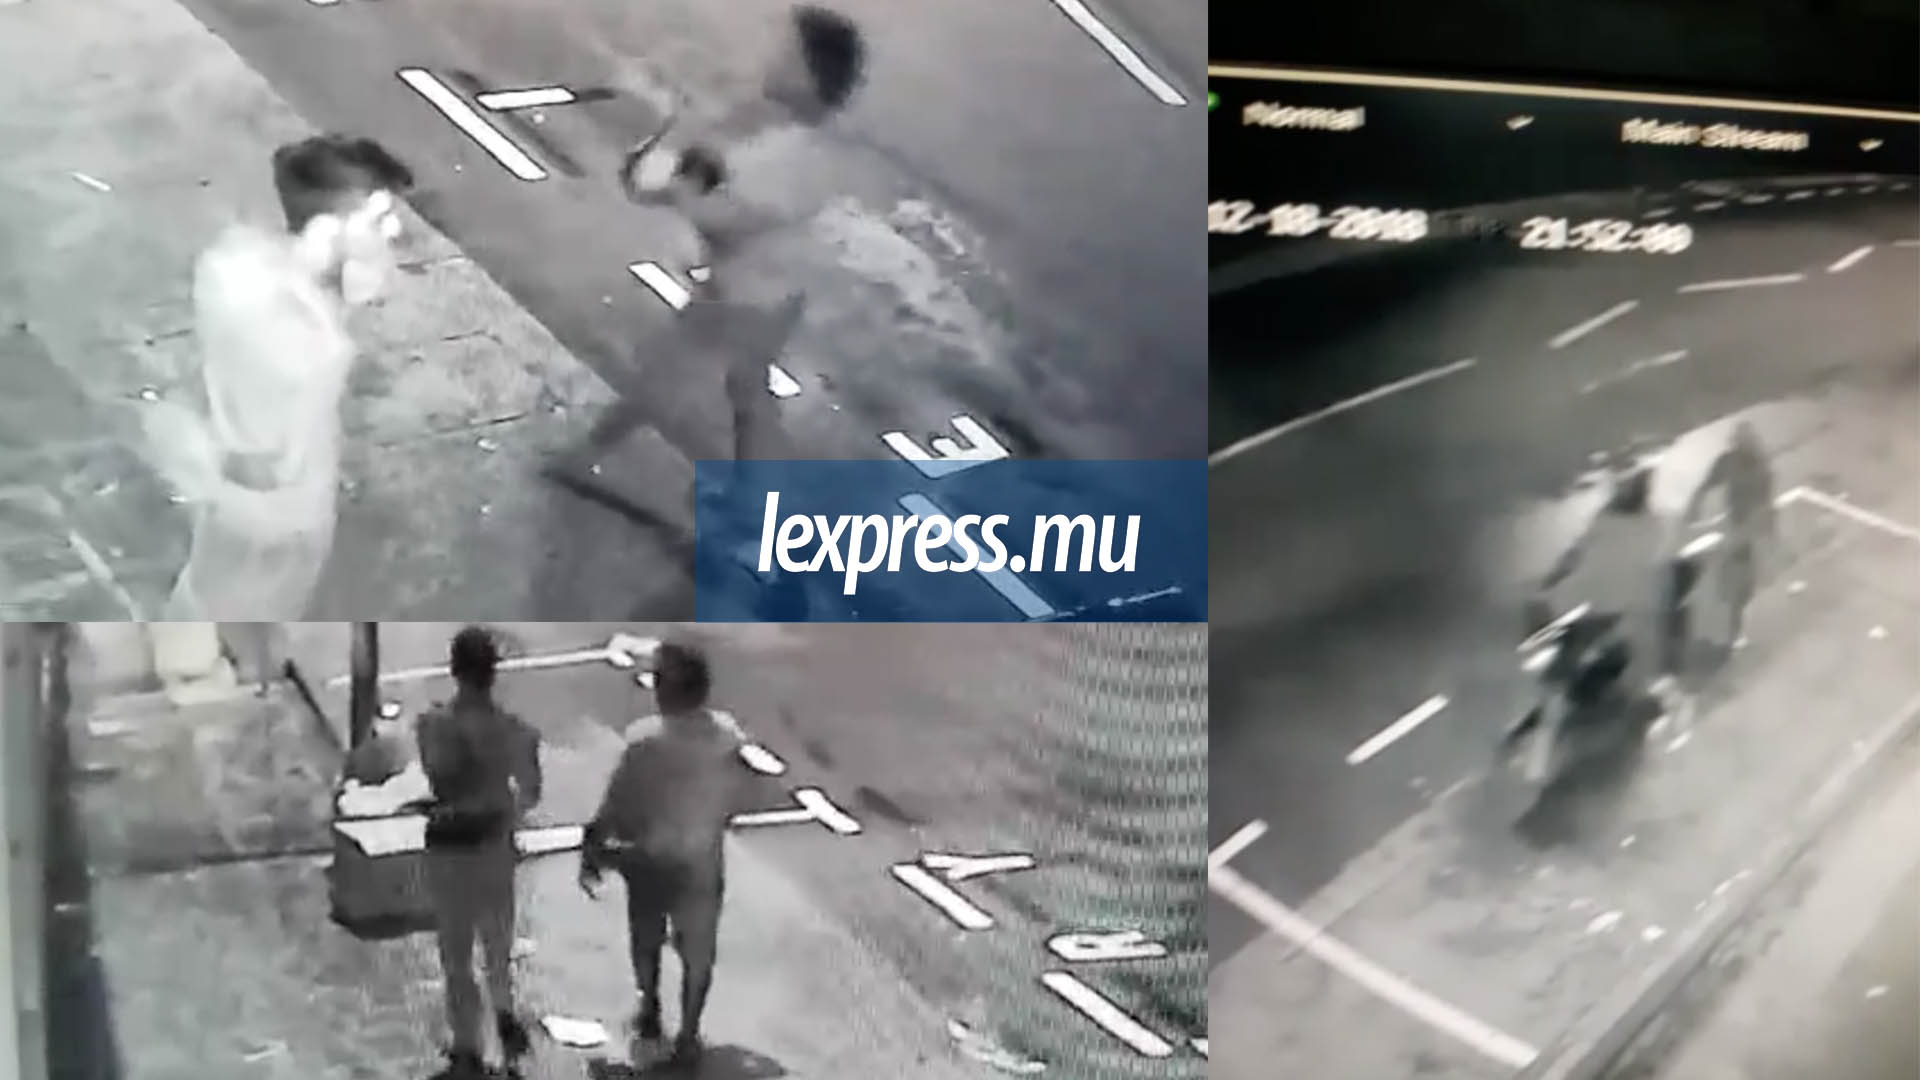 Deux voleurs filmés sur caméra: un appel à témoins lancé